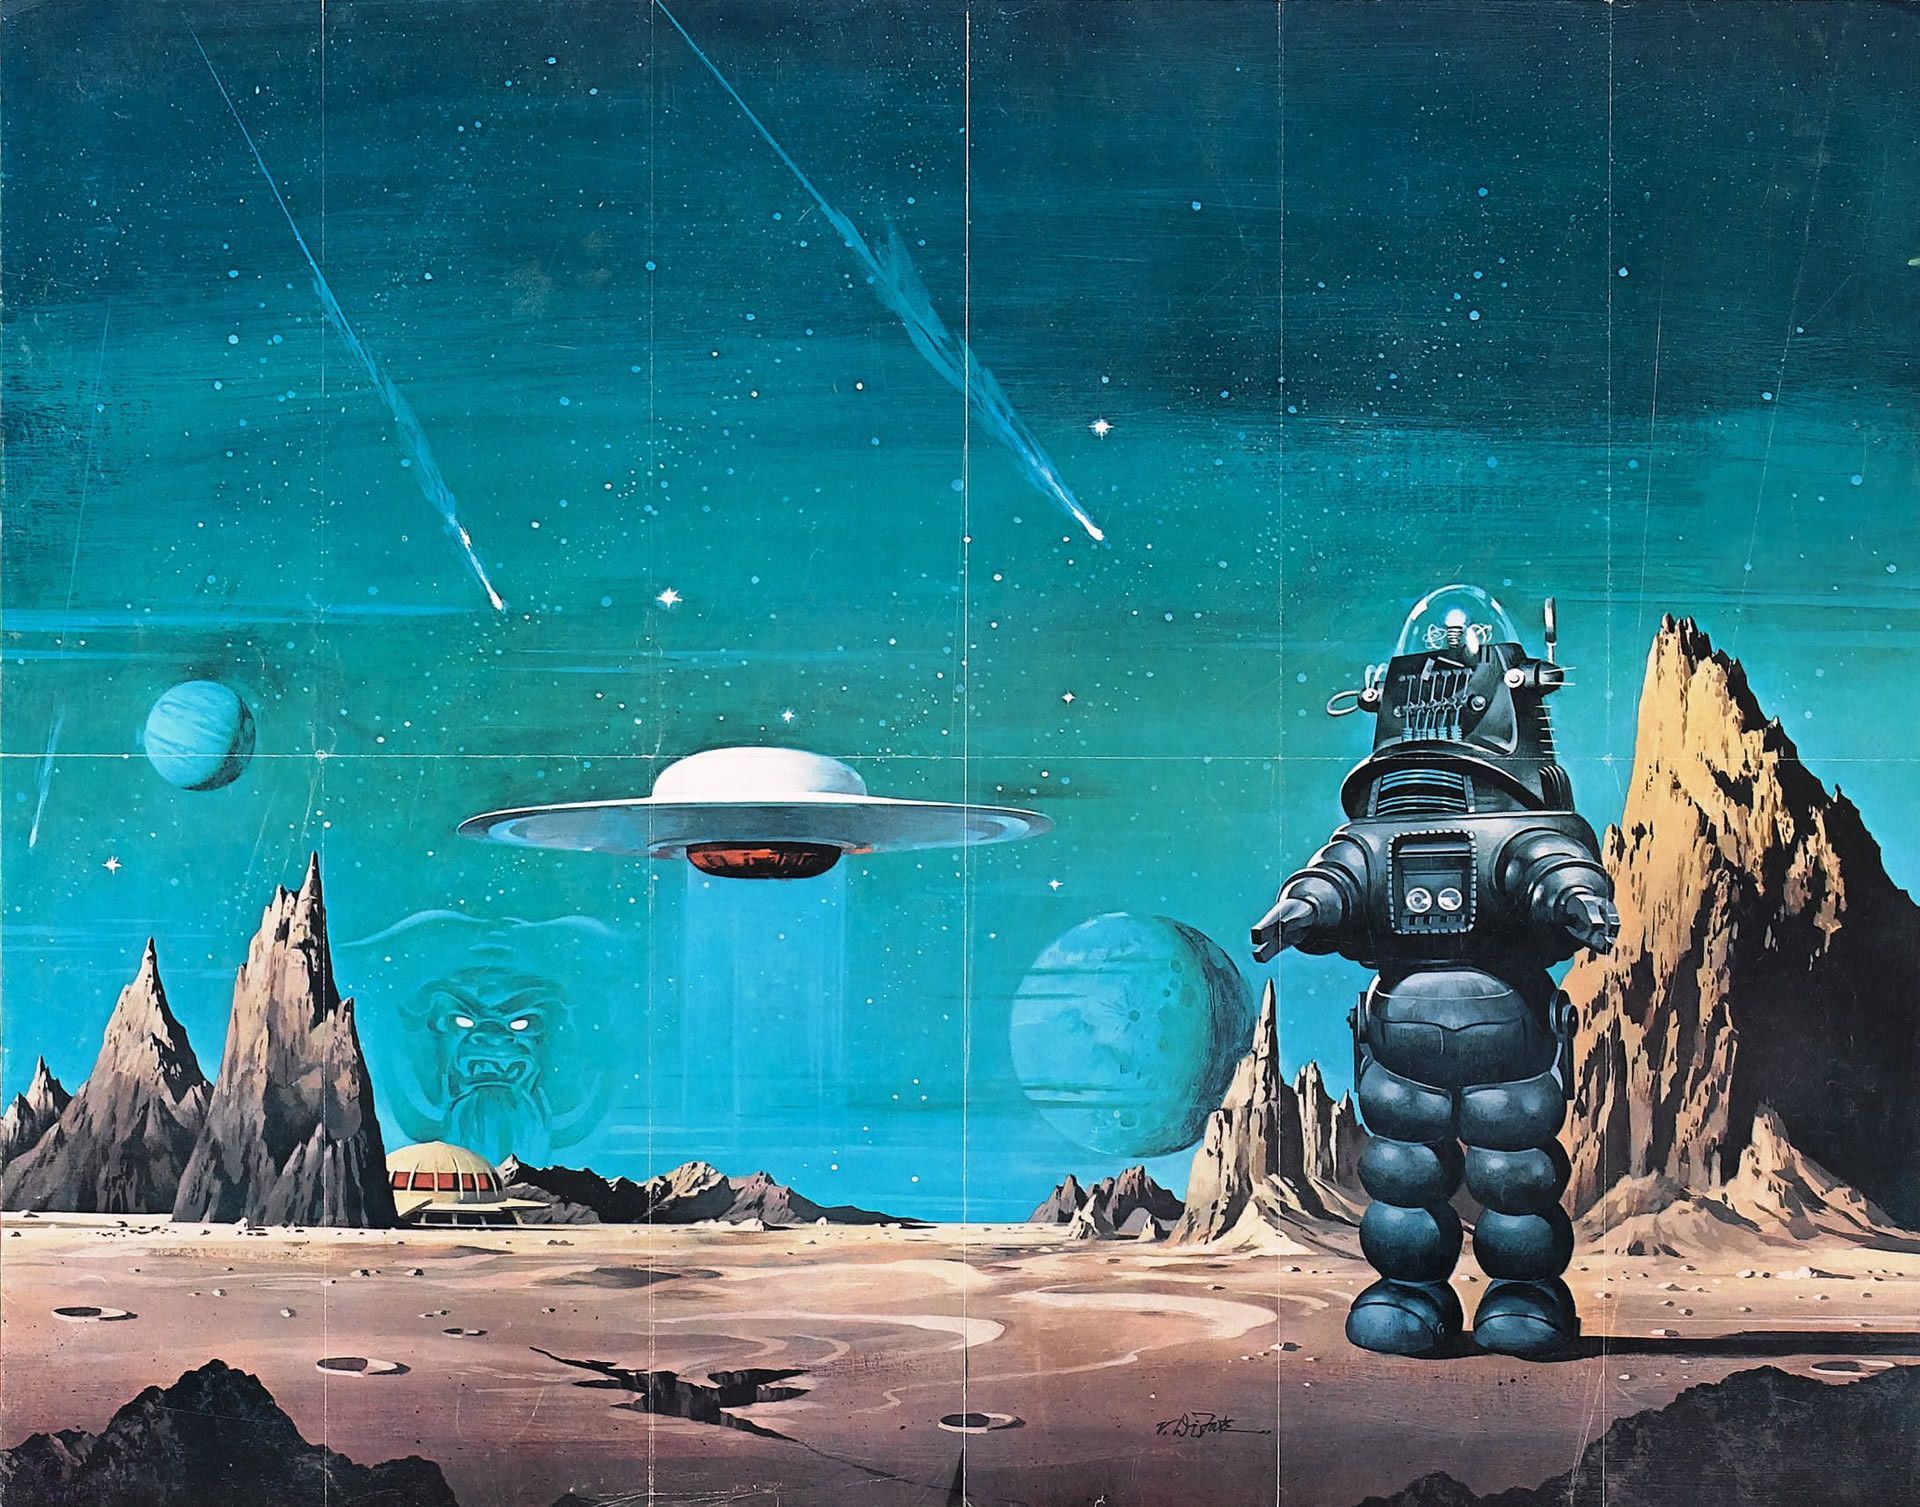 Retro Sci Fi Wallpaper Free Retro Sci Fi Background